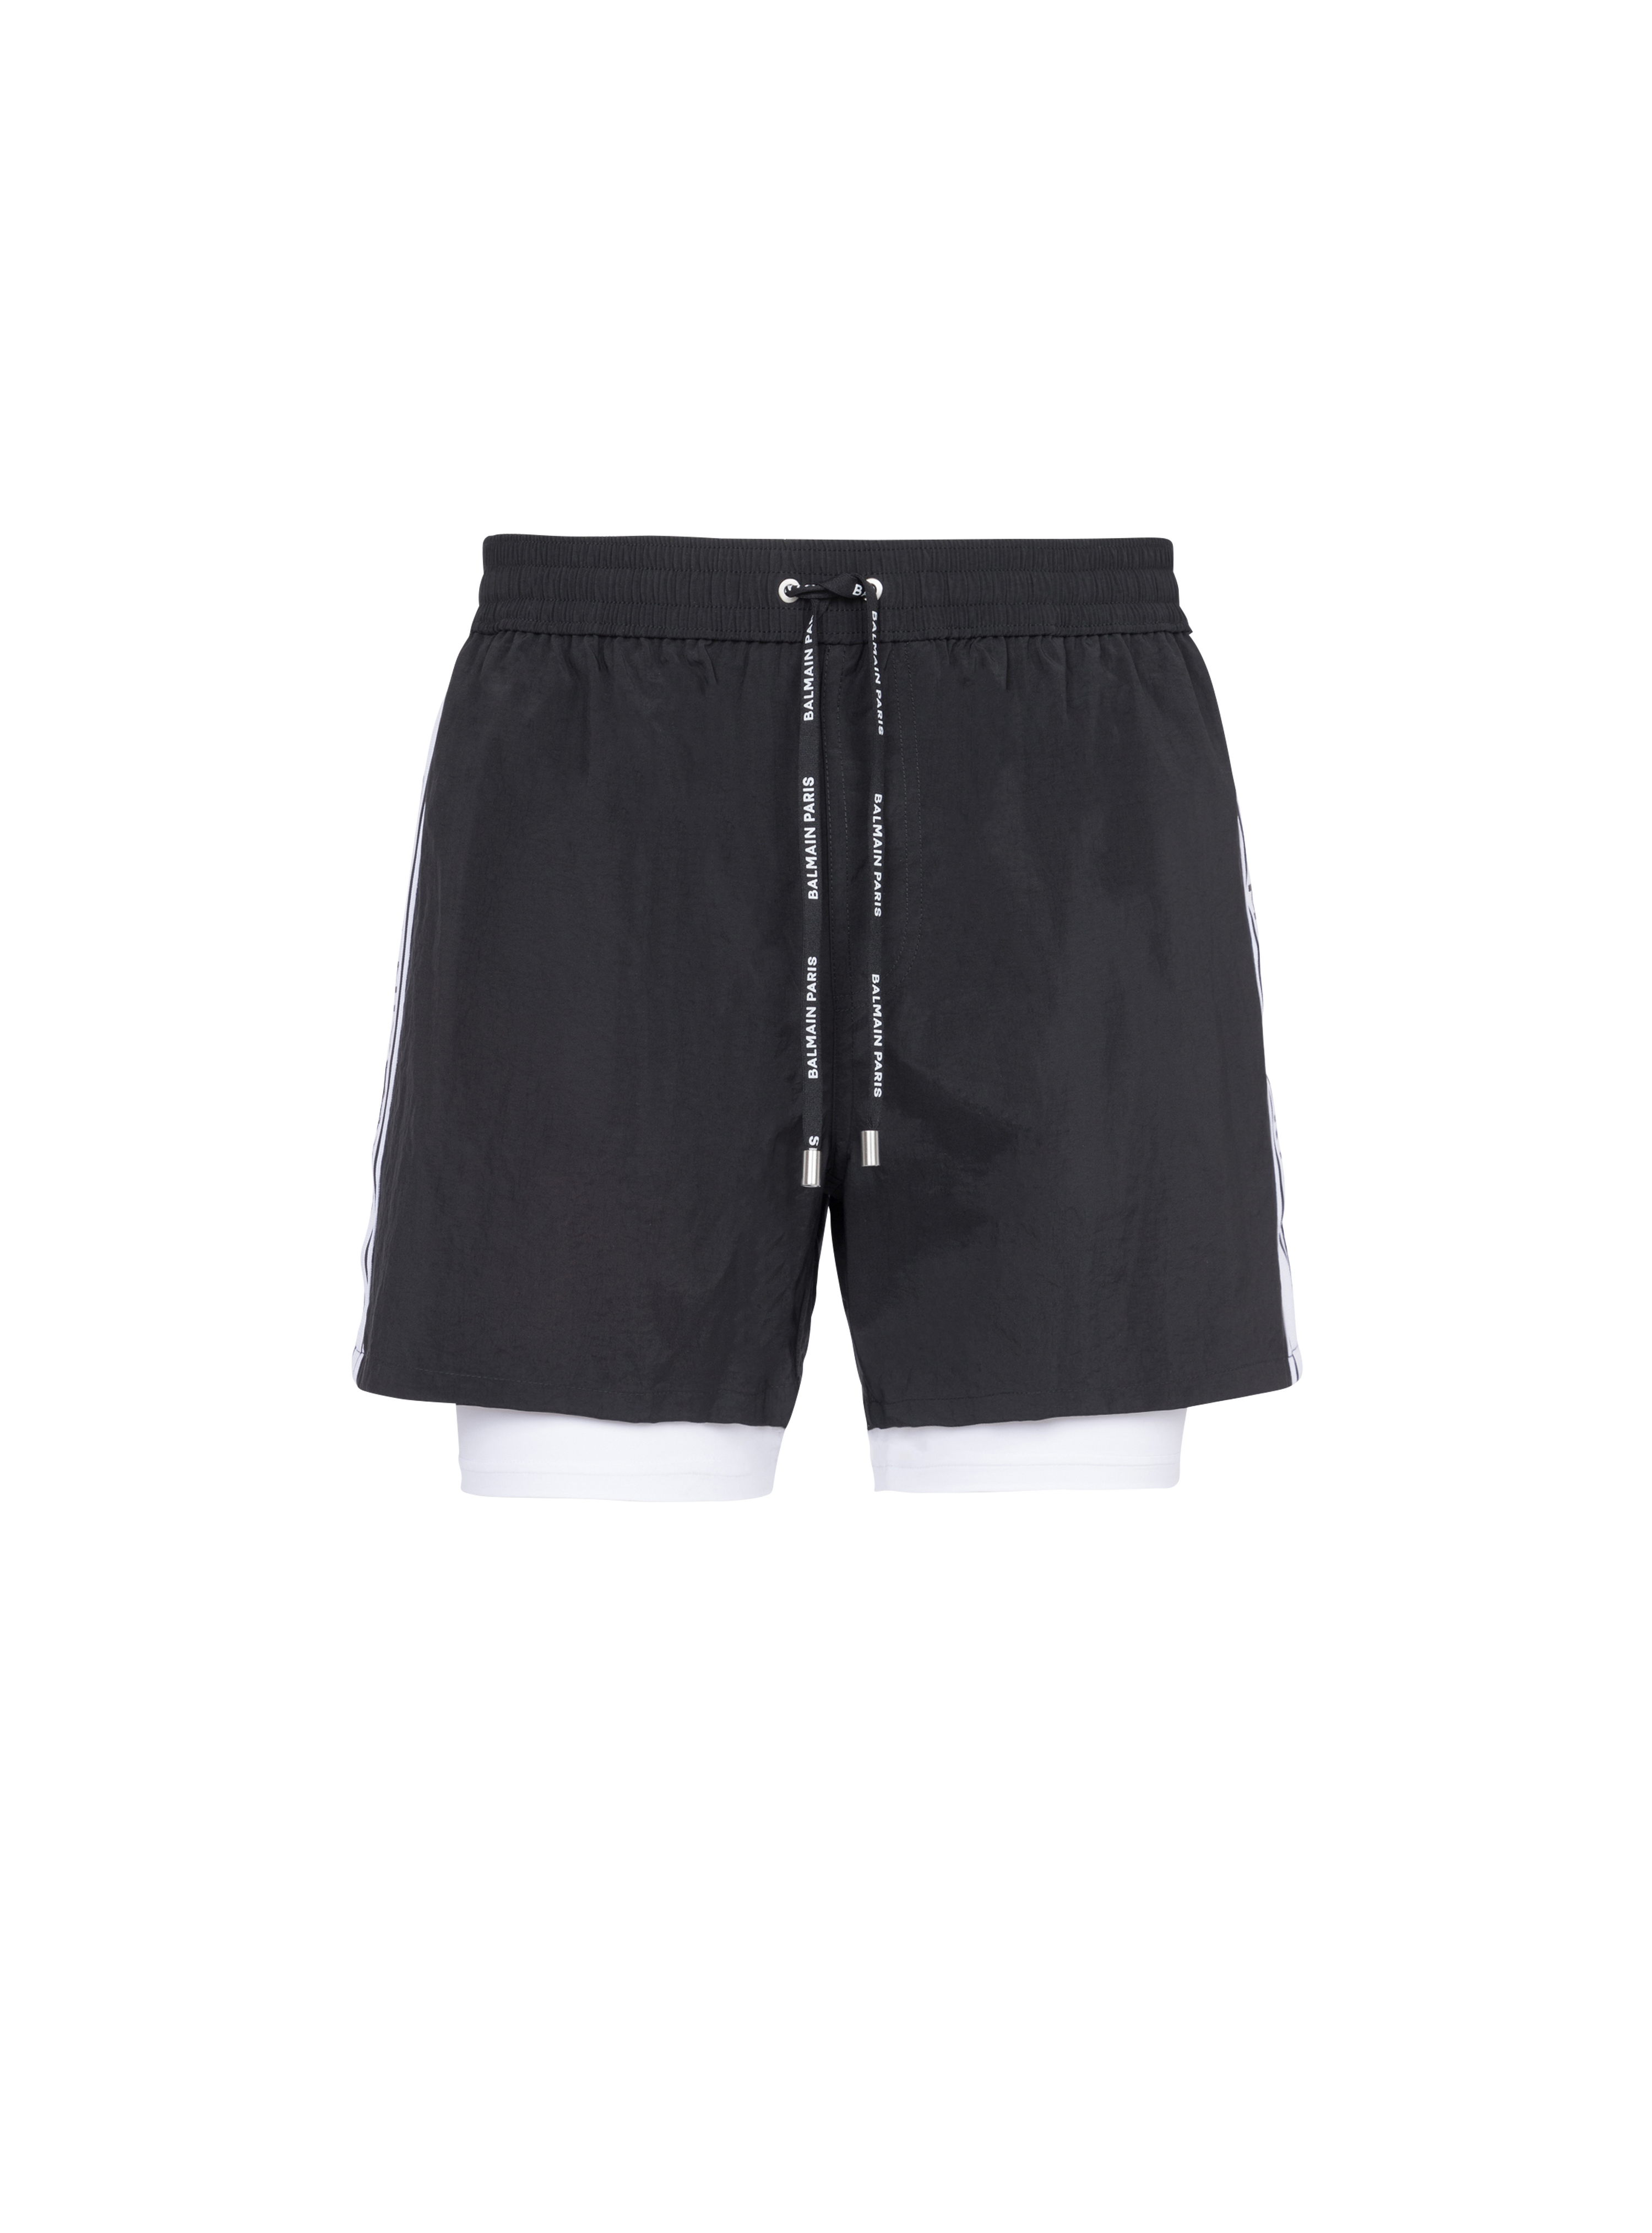 Balmain logo swim shorts, black